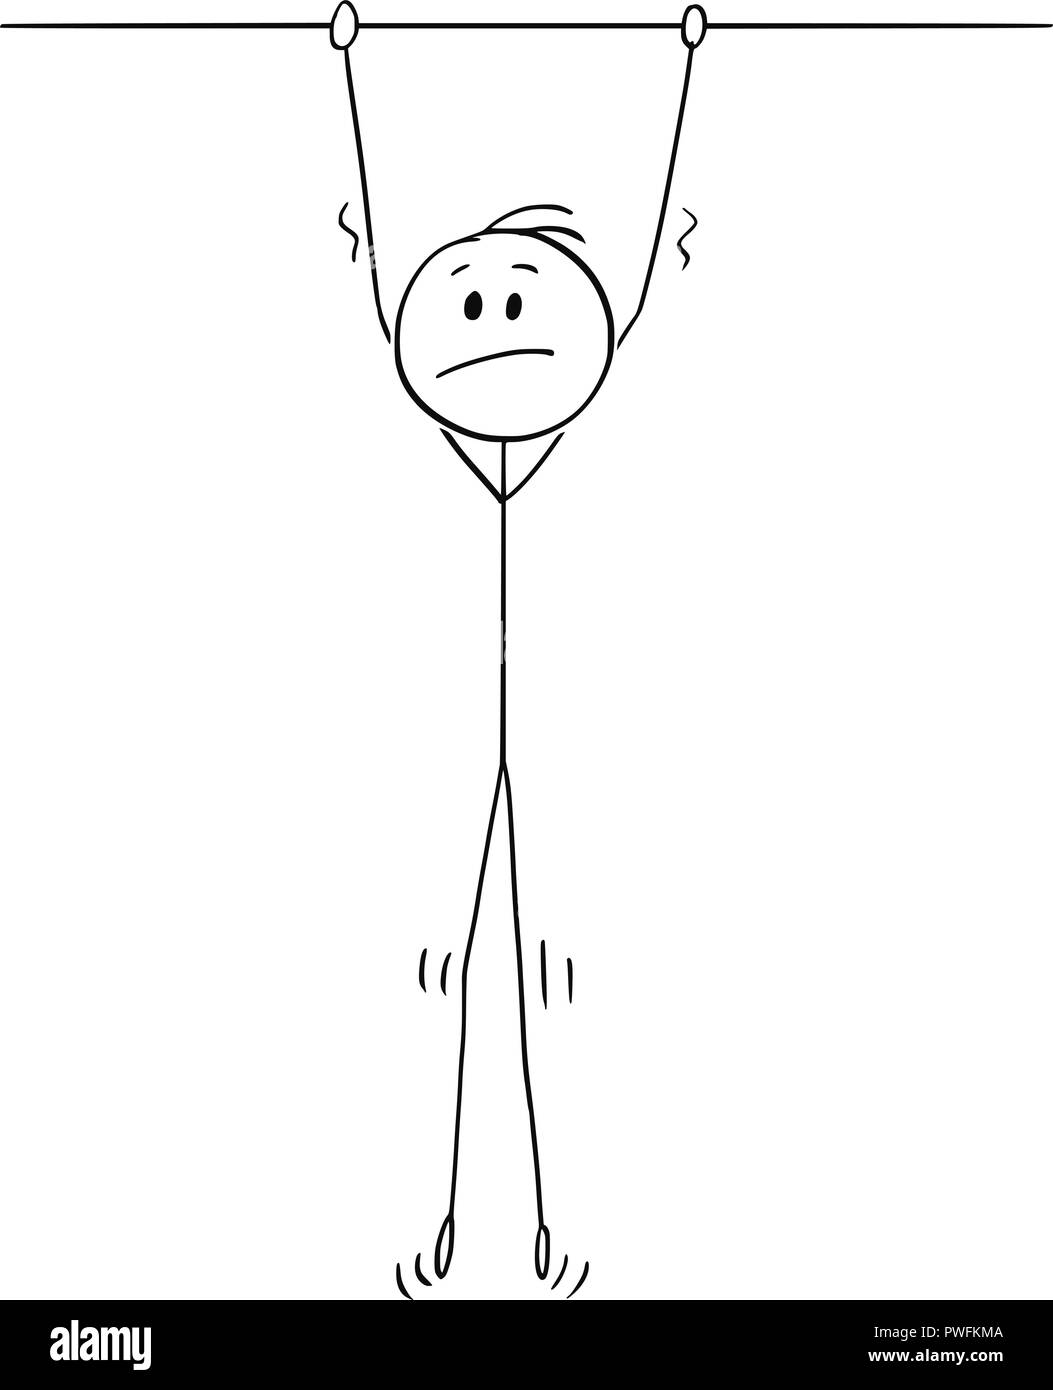 Cartoon of Unhappy Man Hanging High Stock Vector